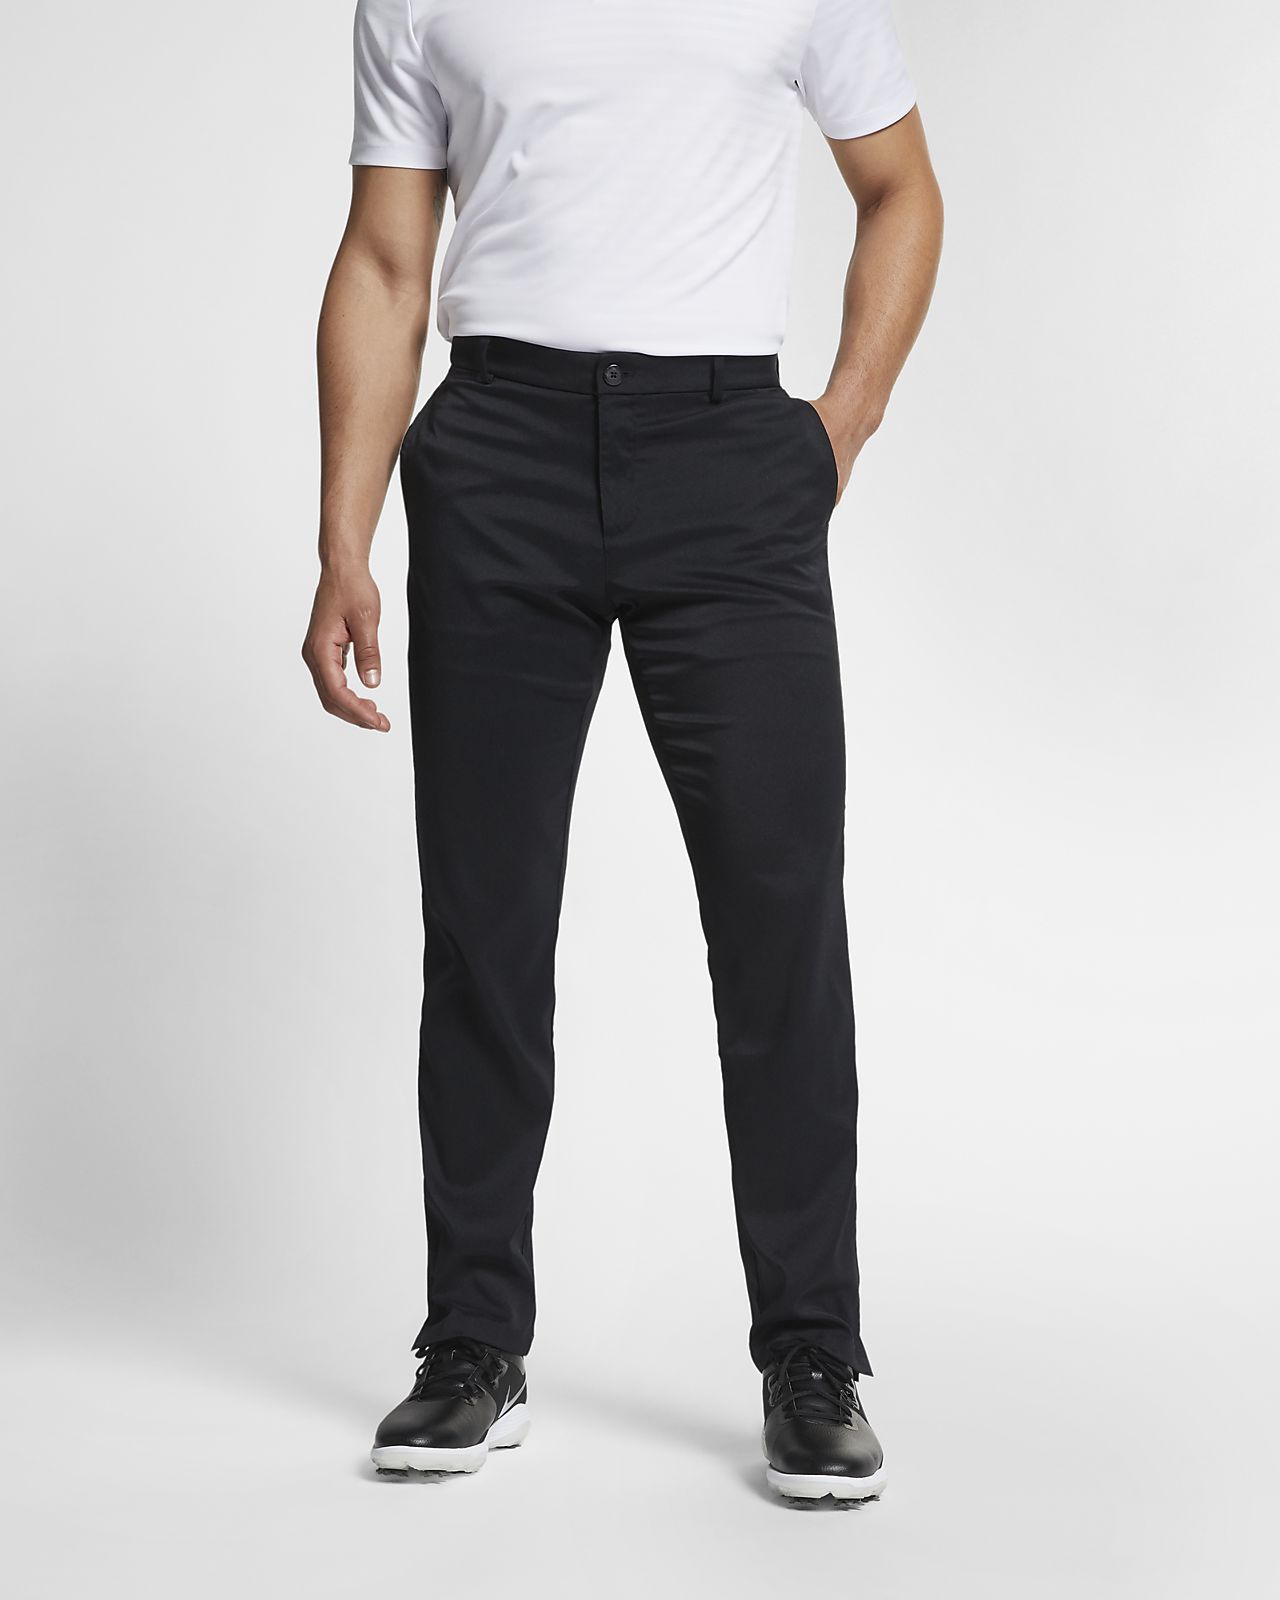 Buy > nike men's flex slim golf pants > in stock